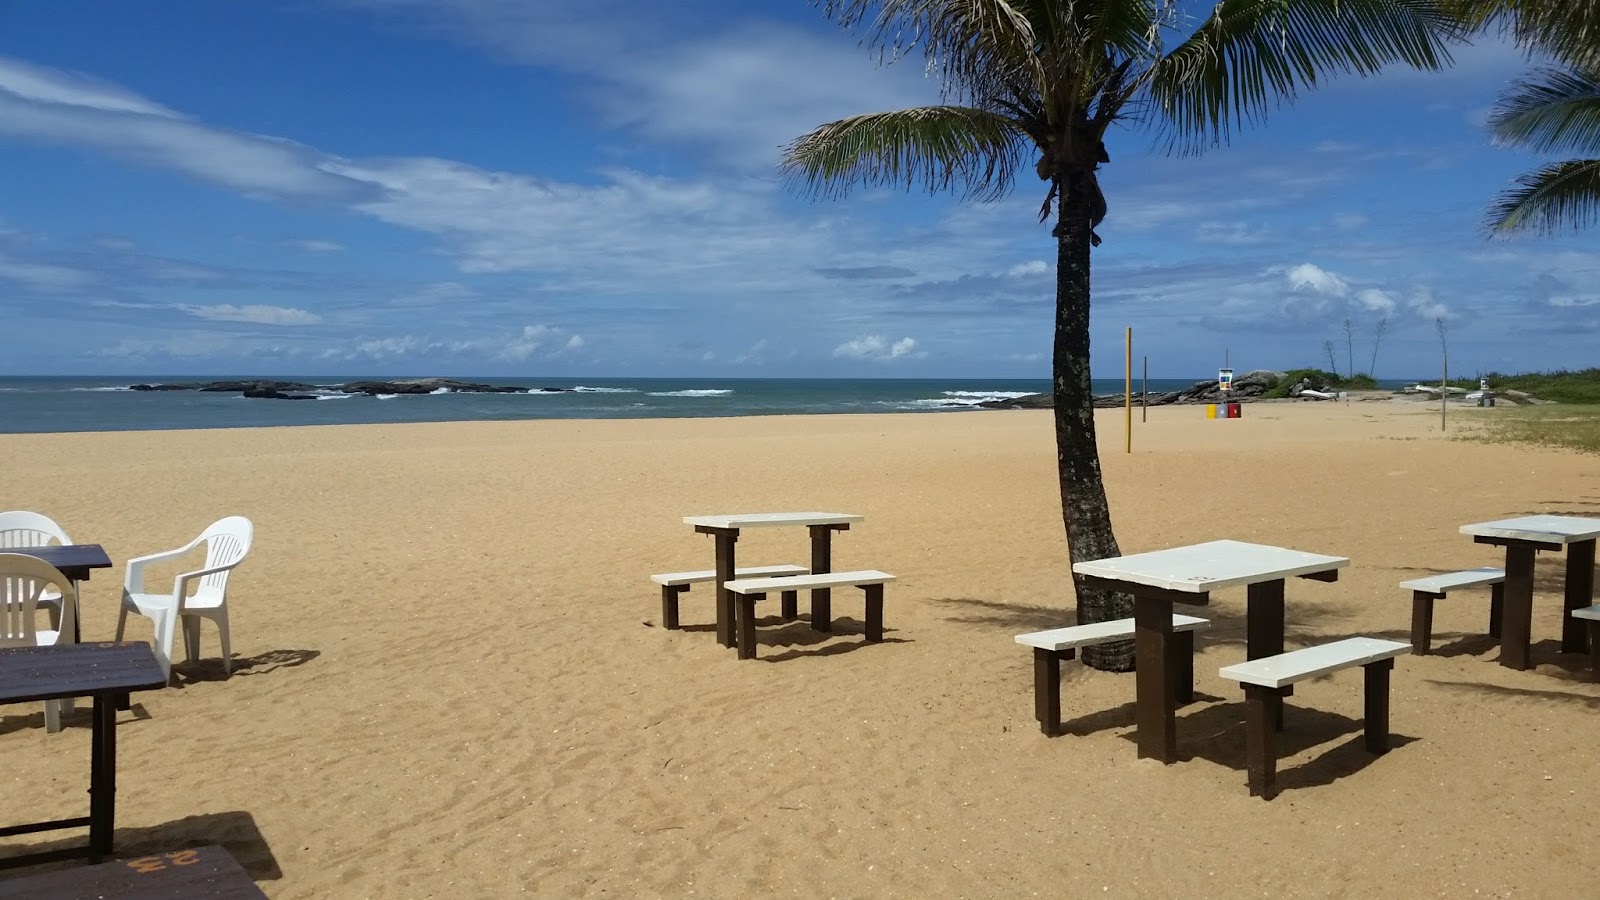 Photo de Plage de Mar do Norte - endroit populaire parmi les connaisseurs de la détente